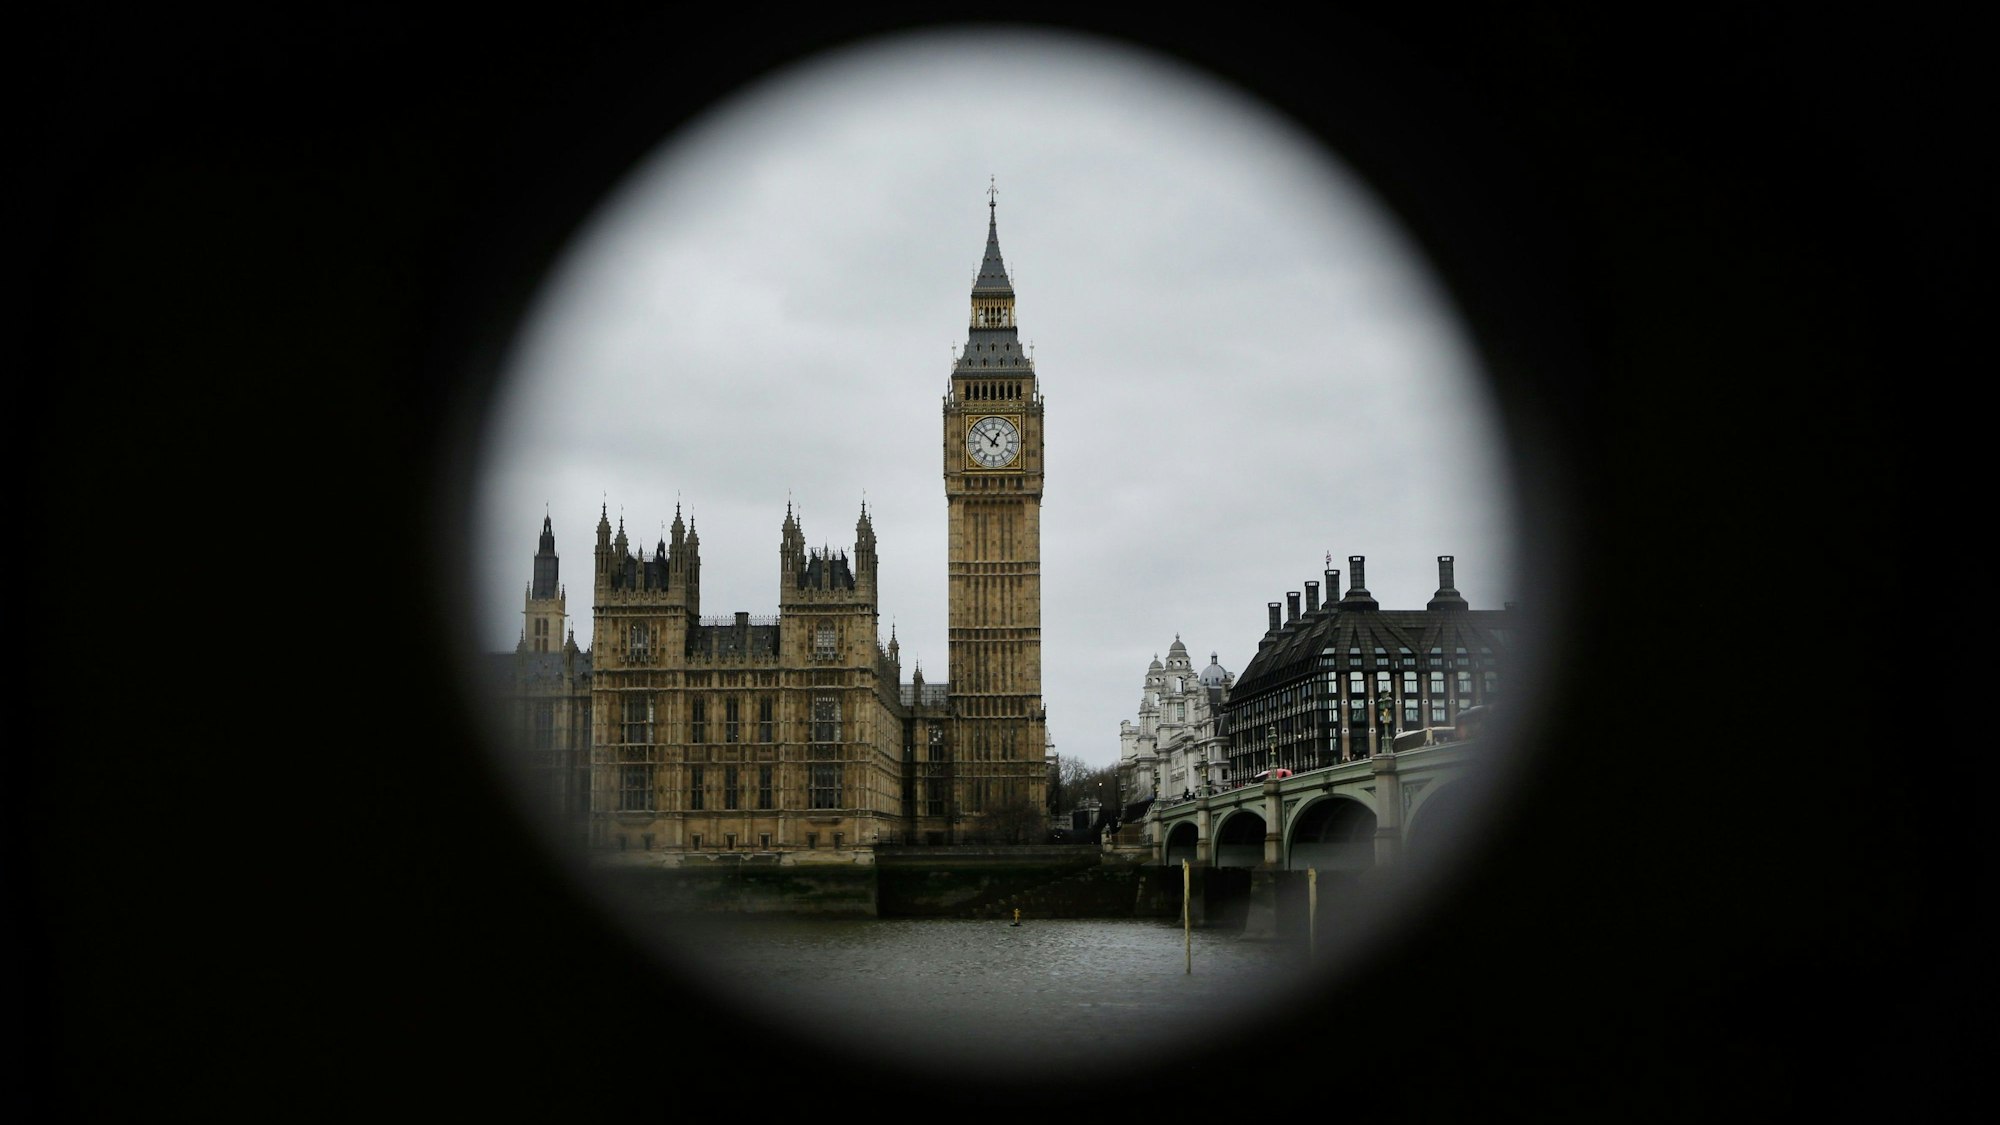 London: Der Palace of Westminster (Houses of Parliament) und der Elizabeth Tower (Big Ben) sind durch ein Loch an einem Teleskop zu sehen. (Archivbild)